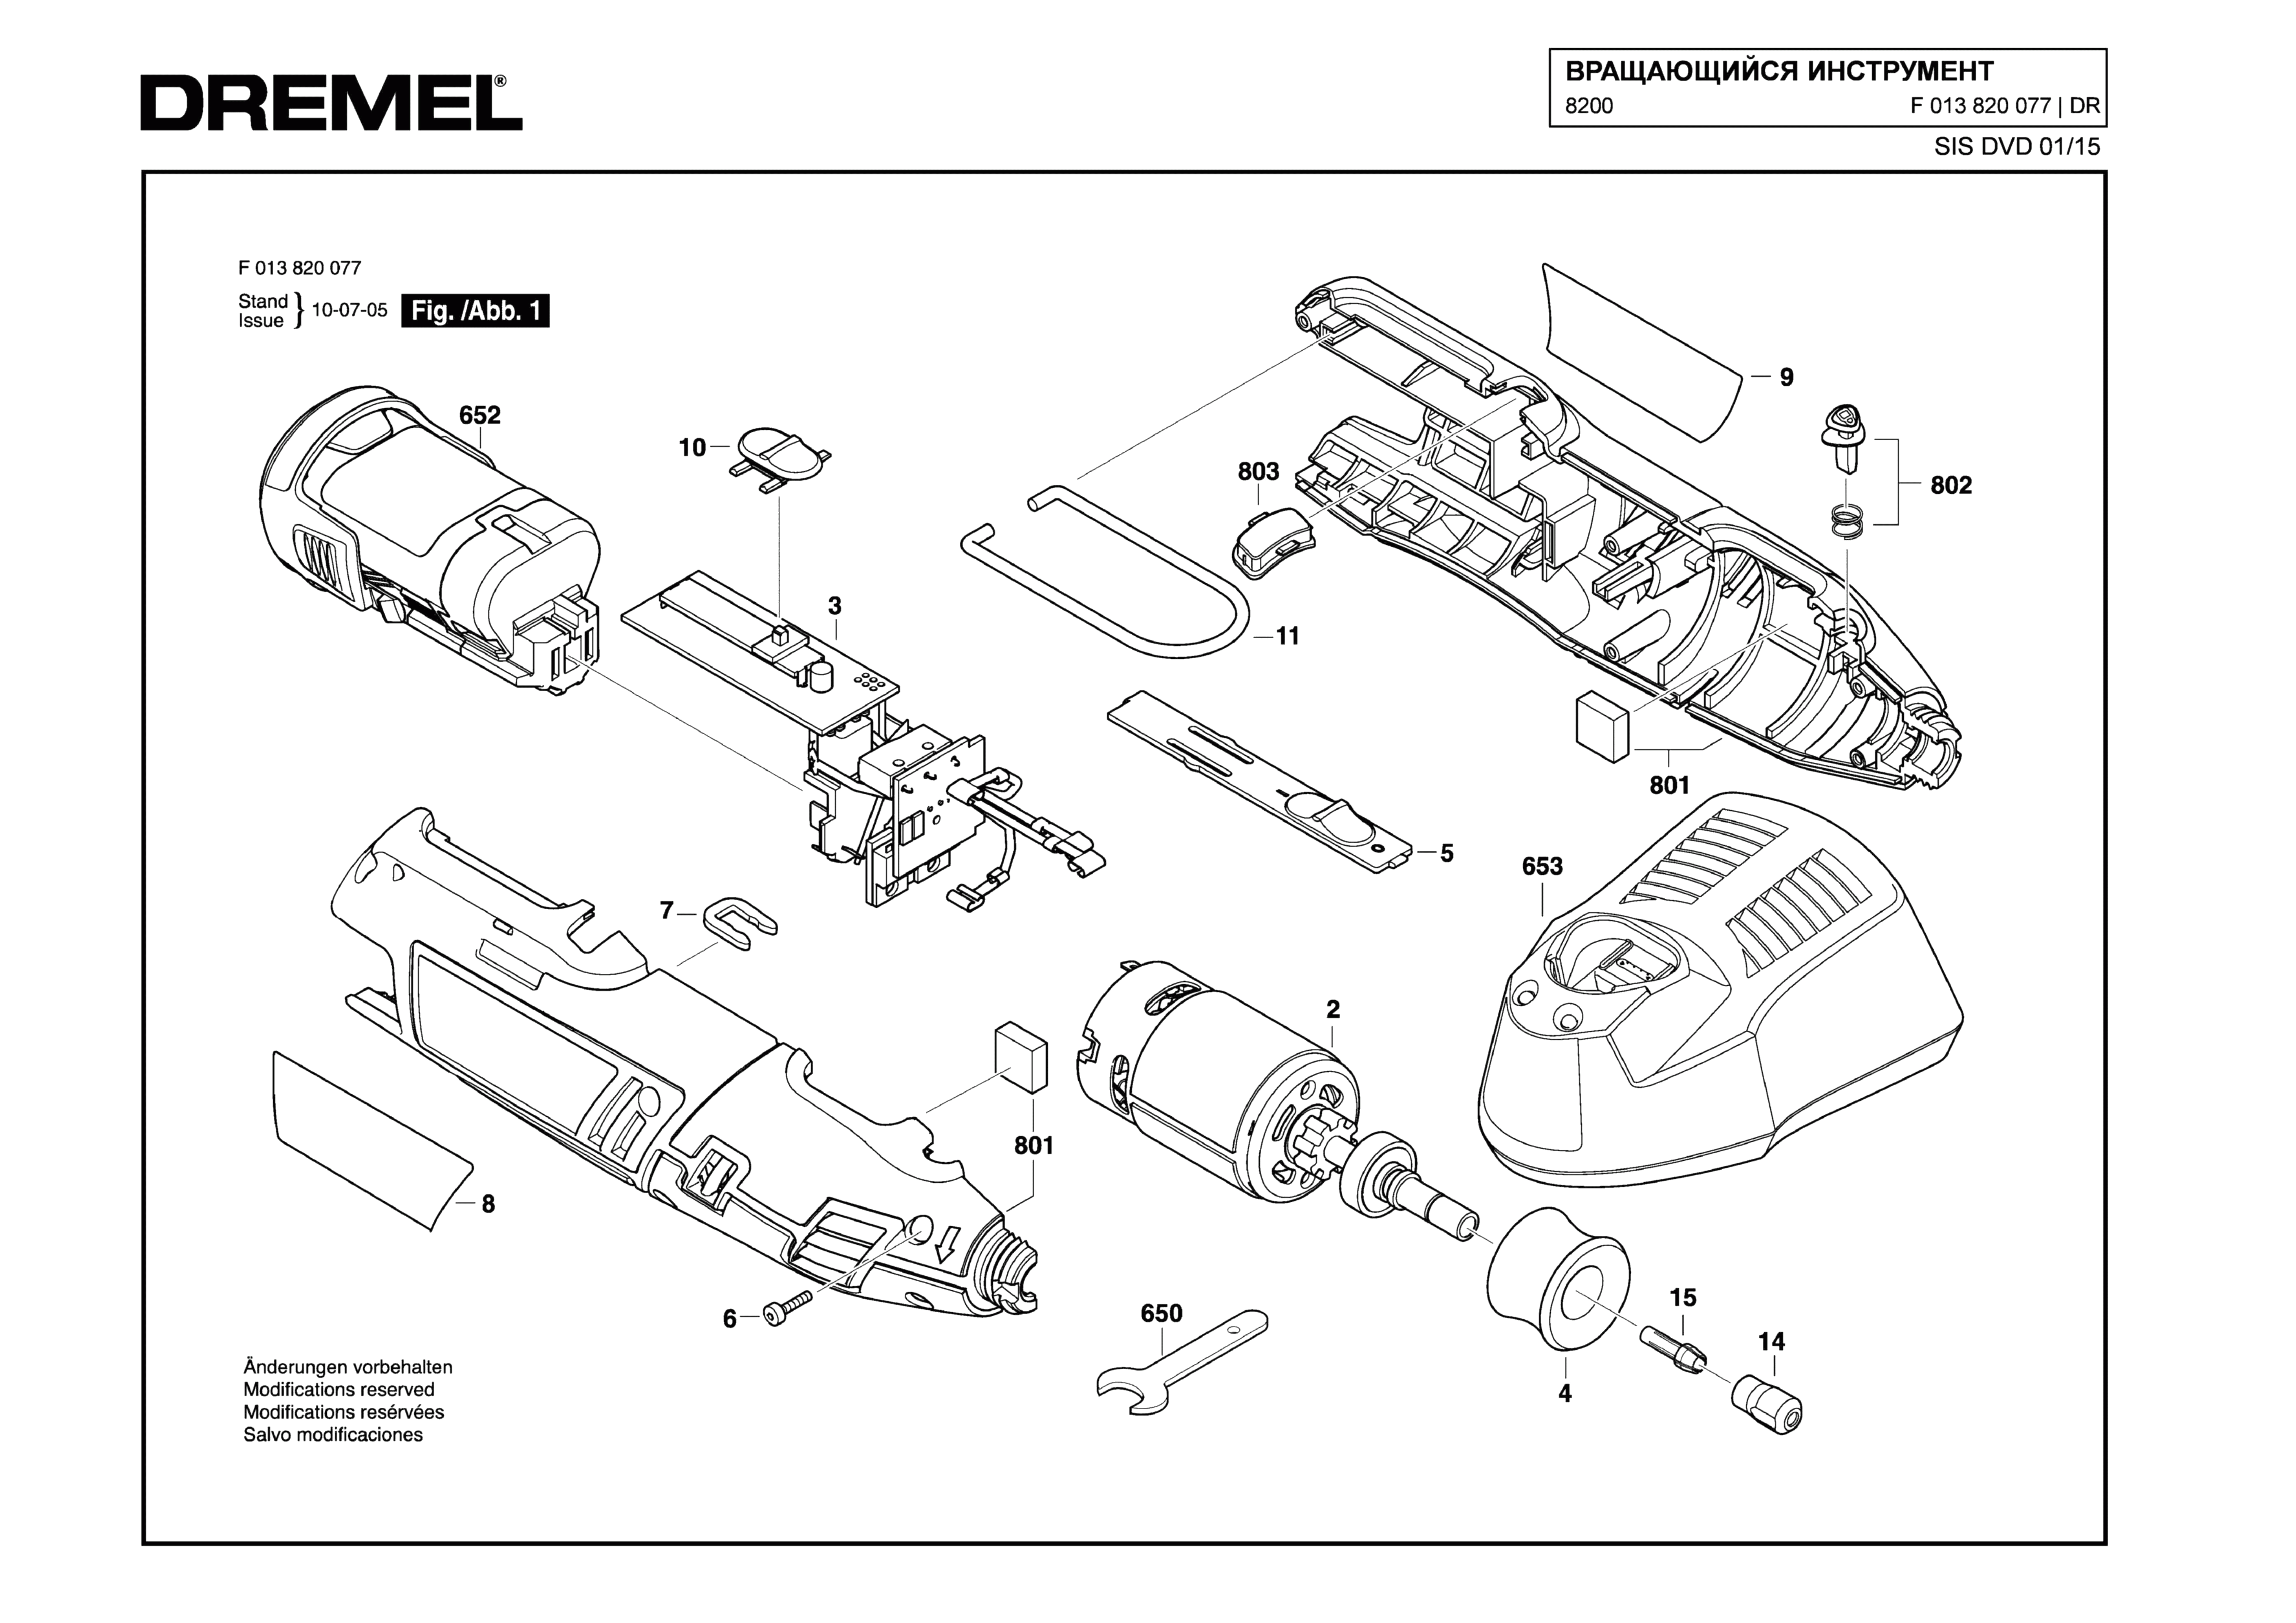 Шлифовальная машина Dremel 8200 (ТИП F013820077)